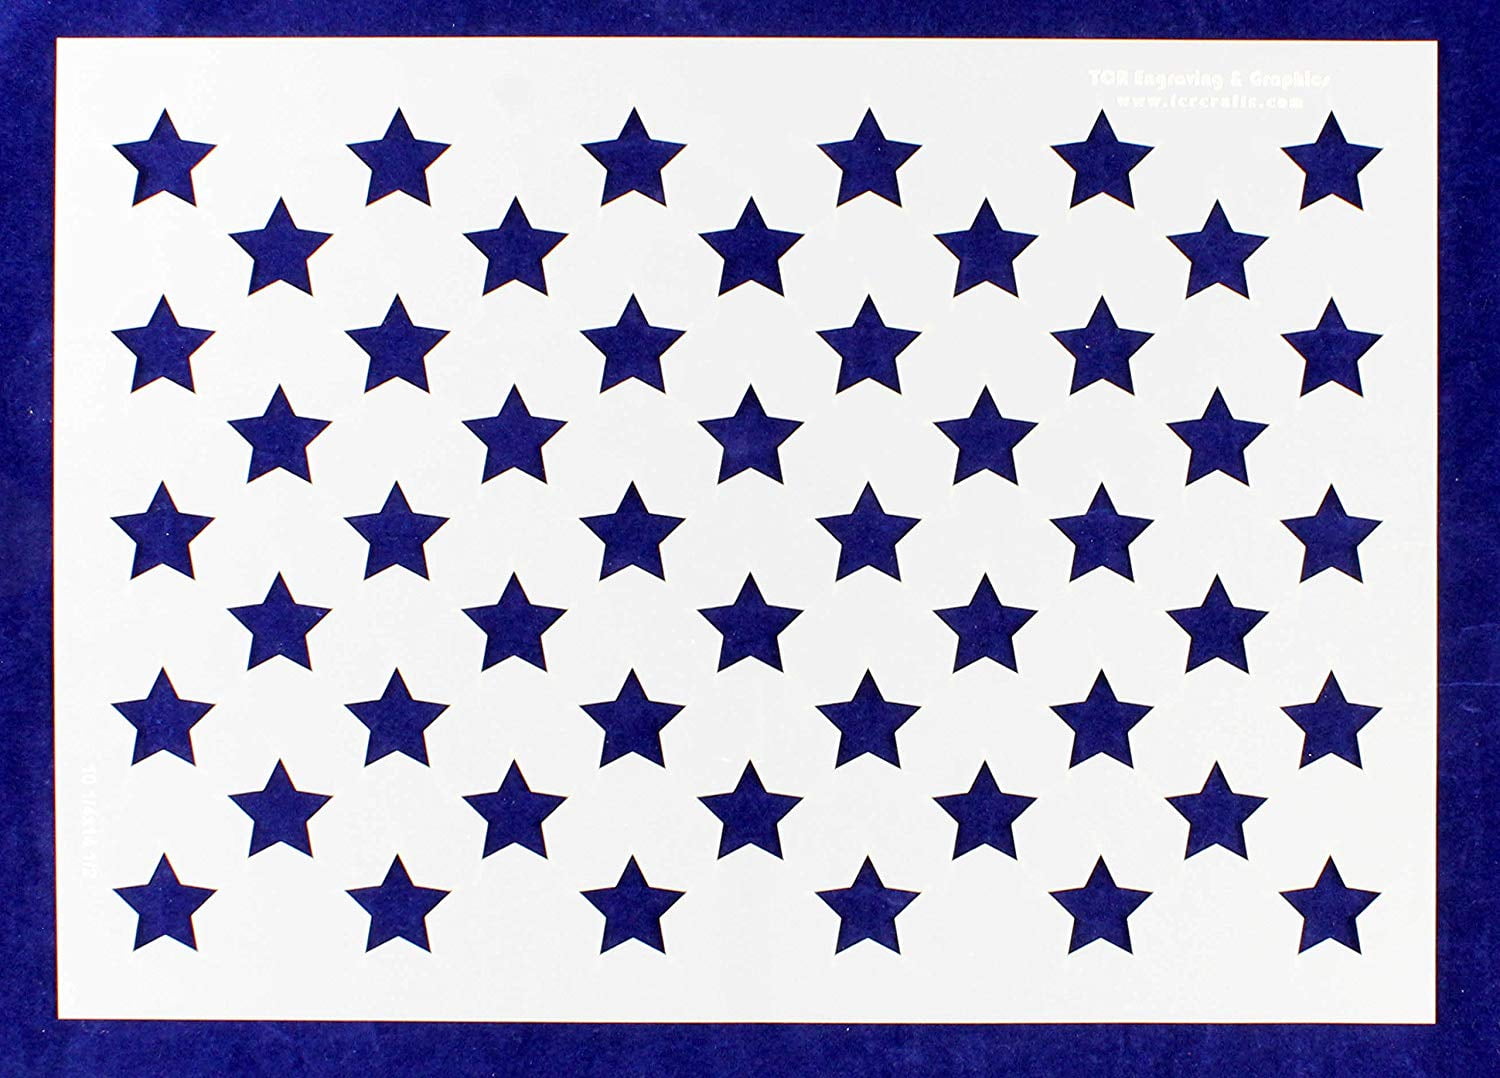 1" STAR STENCIL "50 STARS" TEMPLATE PATRIOTIC AMERICAN FLAG PATTERN 10" X 15" 